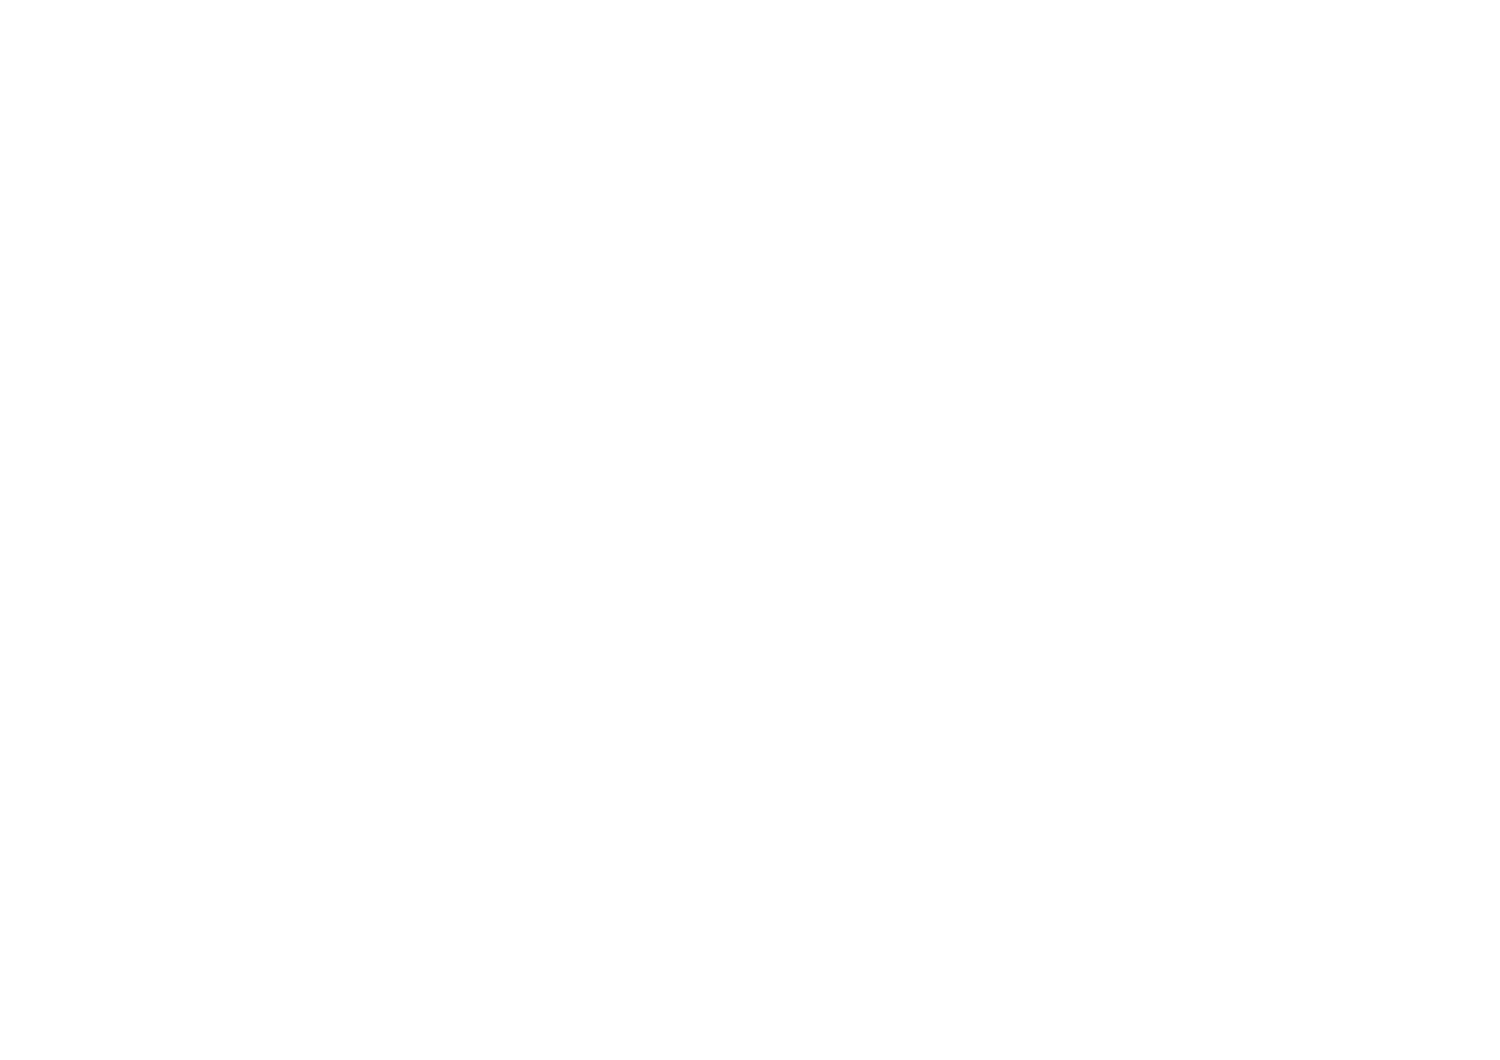 HIMALAYAS